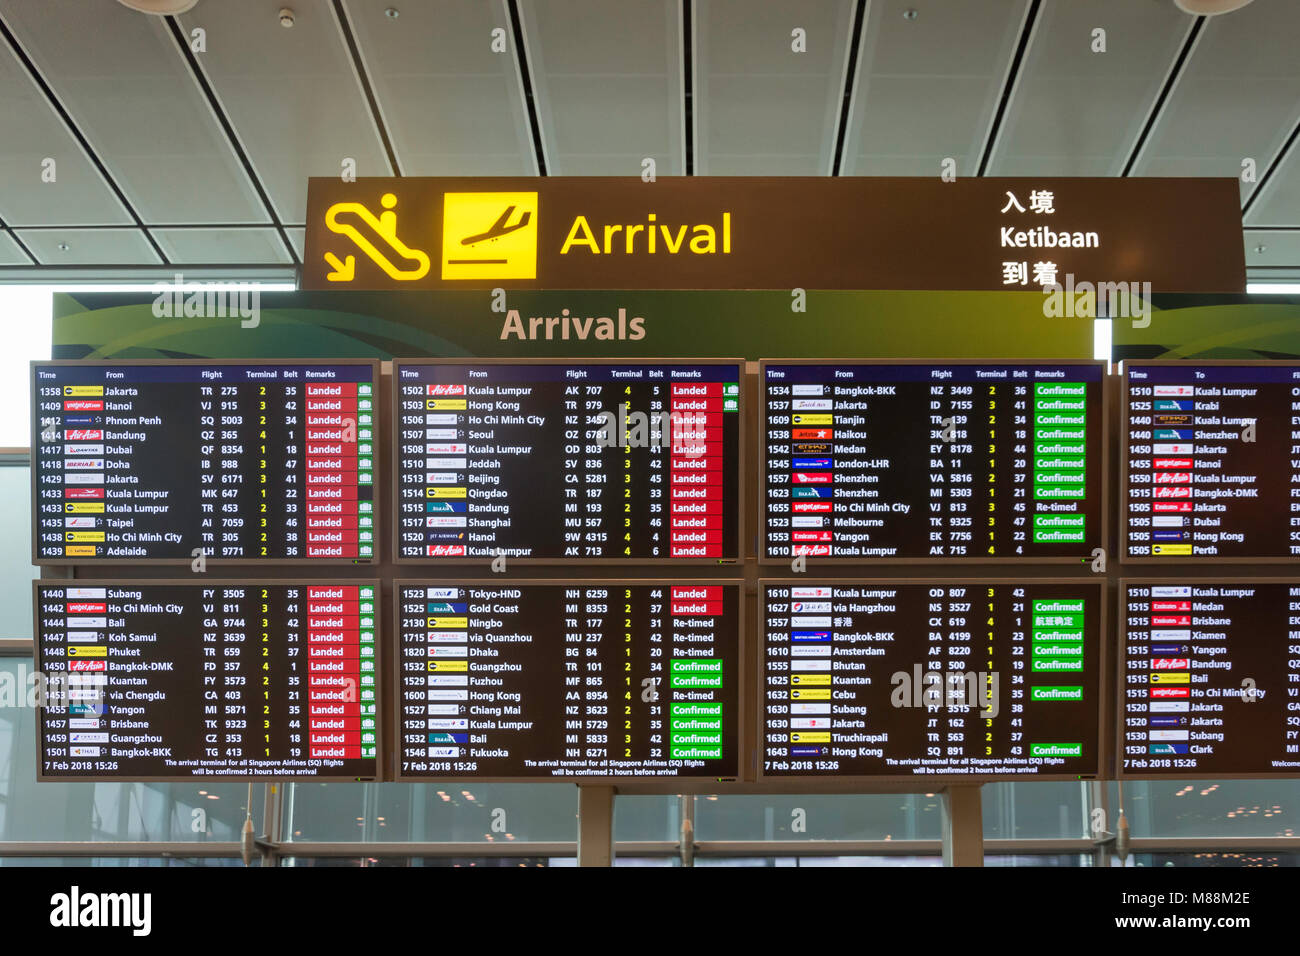 Gli arrivi a display elettronico nel Terminal 2 dell'Aeroporto Changi di Singapore Changi,, isola di Singapore, Singapore Foto Stock